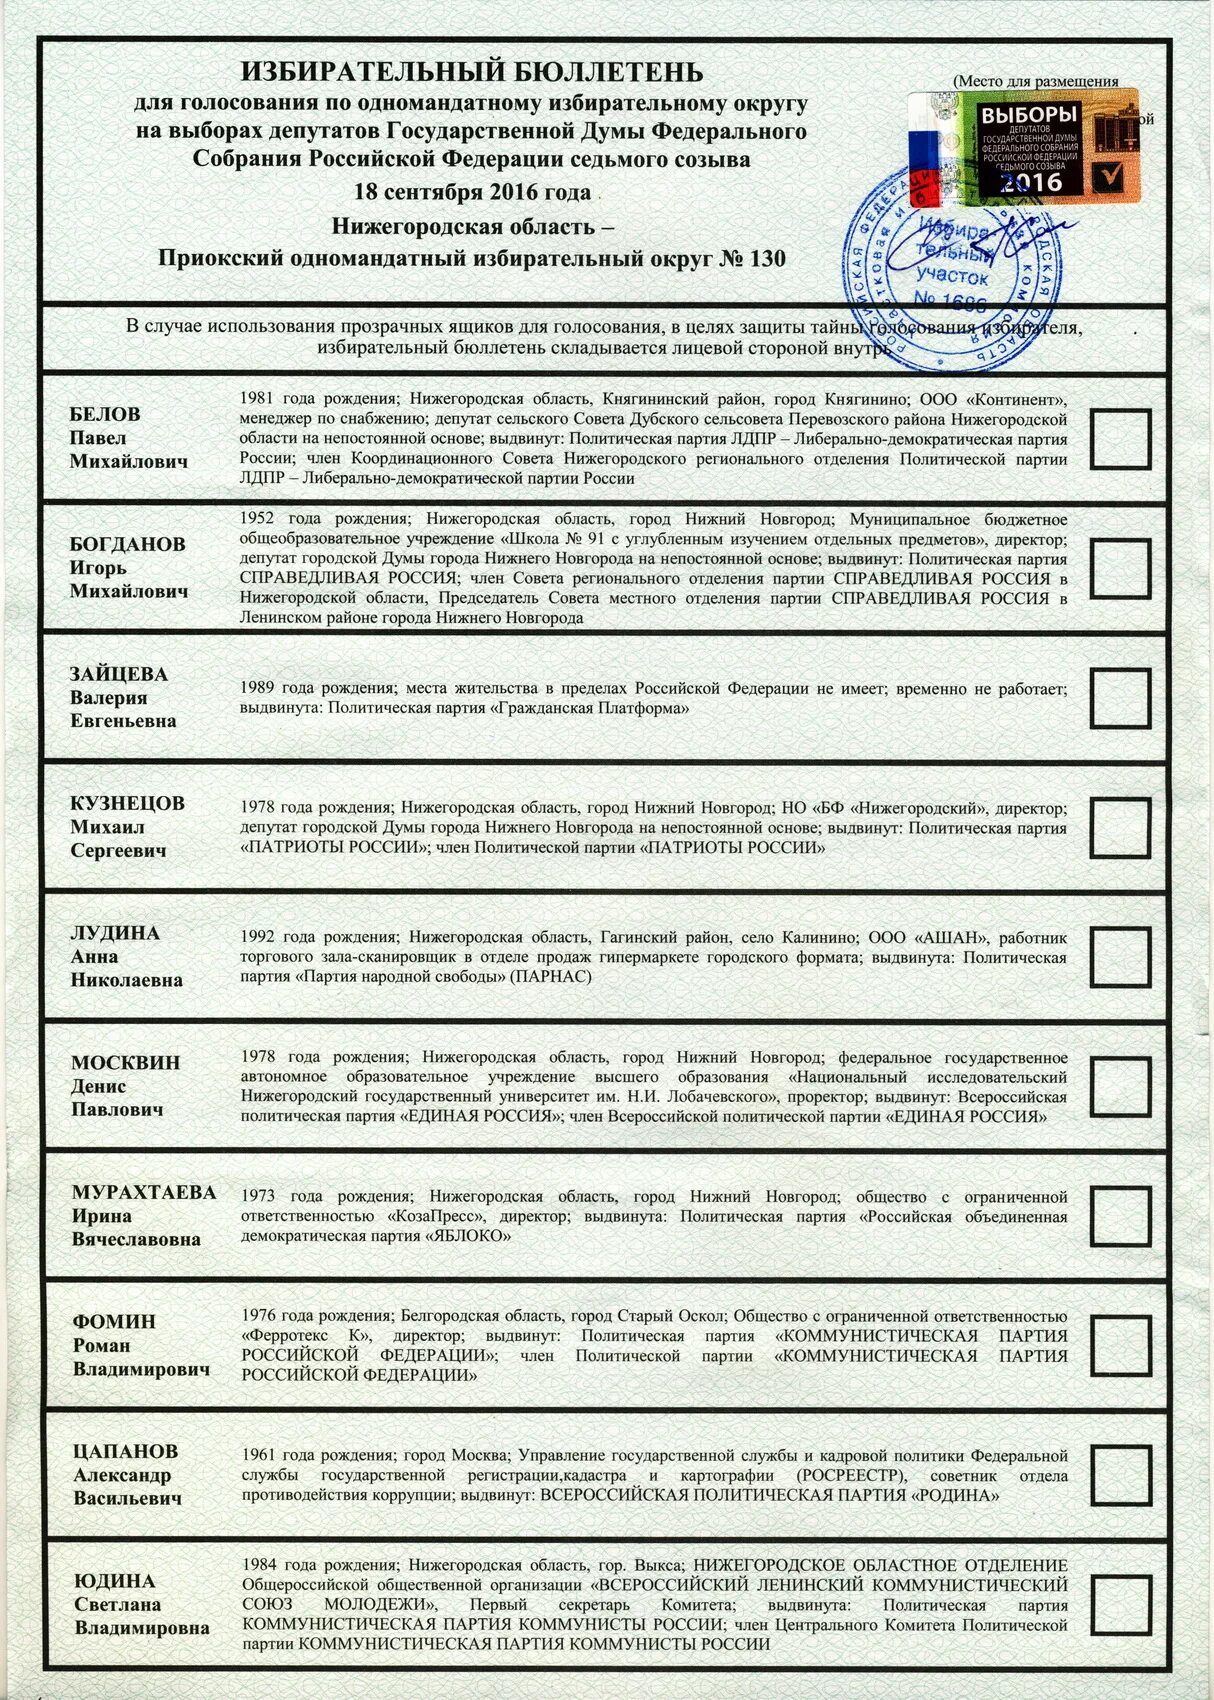 Как выглядит биллютень на выборах президента рф. Президентские выборы 2012 года в России бюллетень. Бюллетень для голосования. Бюллетень для голосования президента.